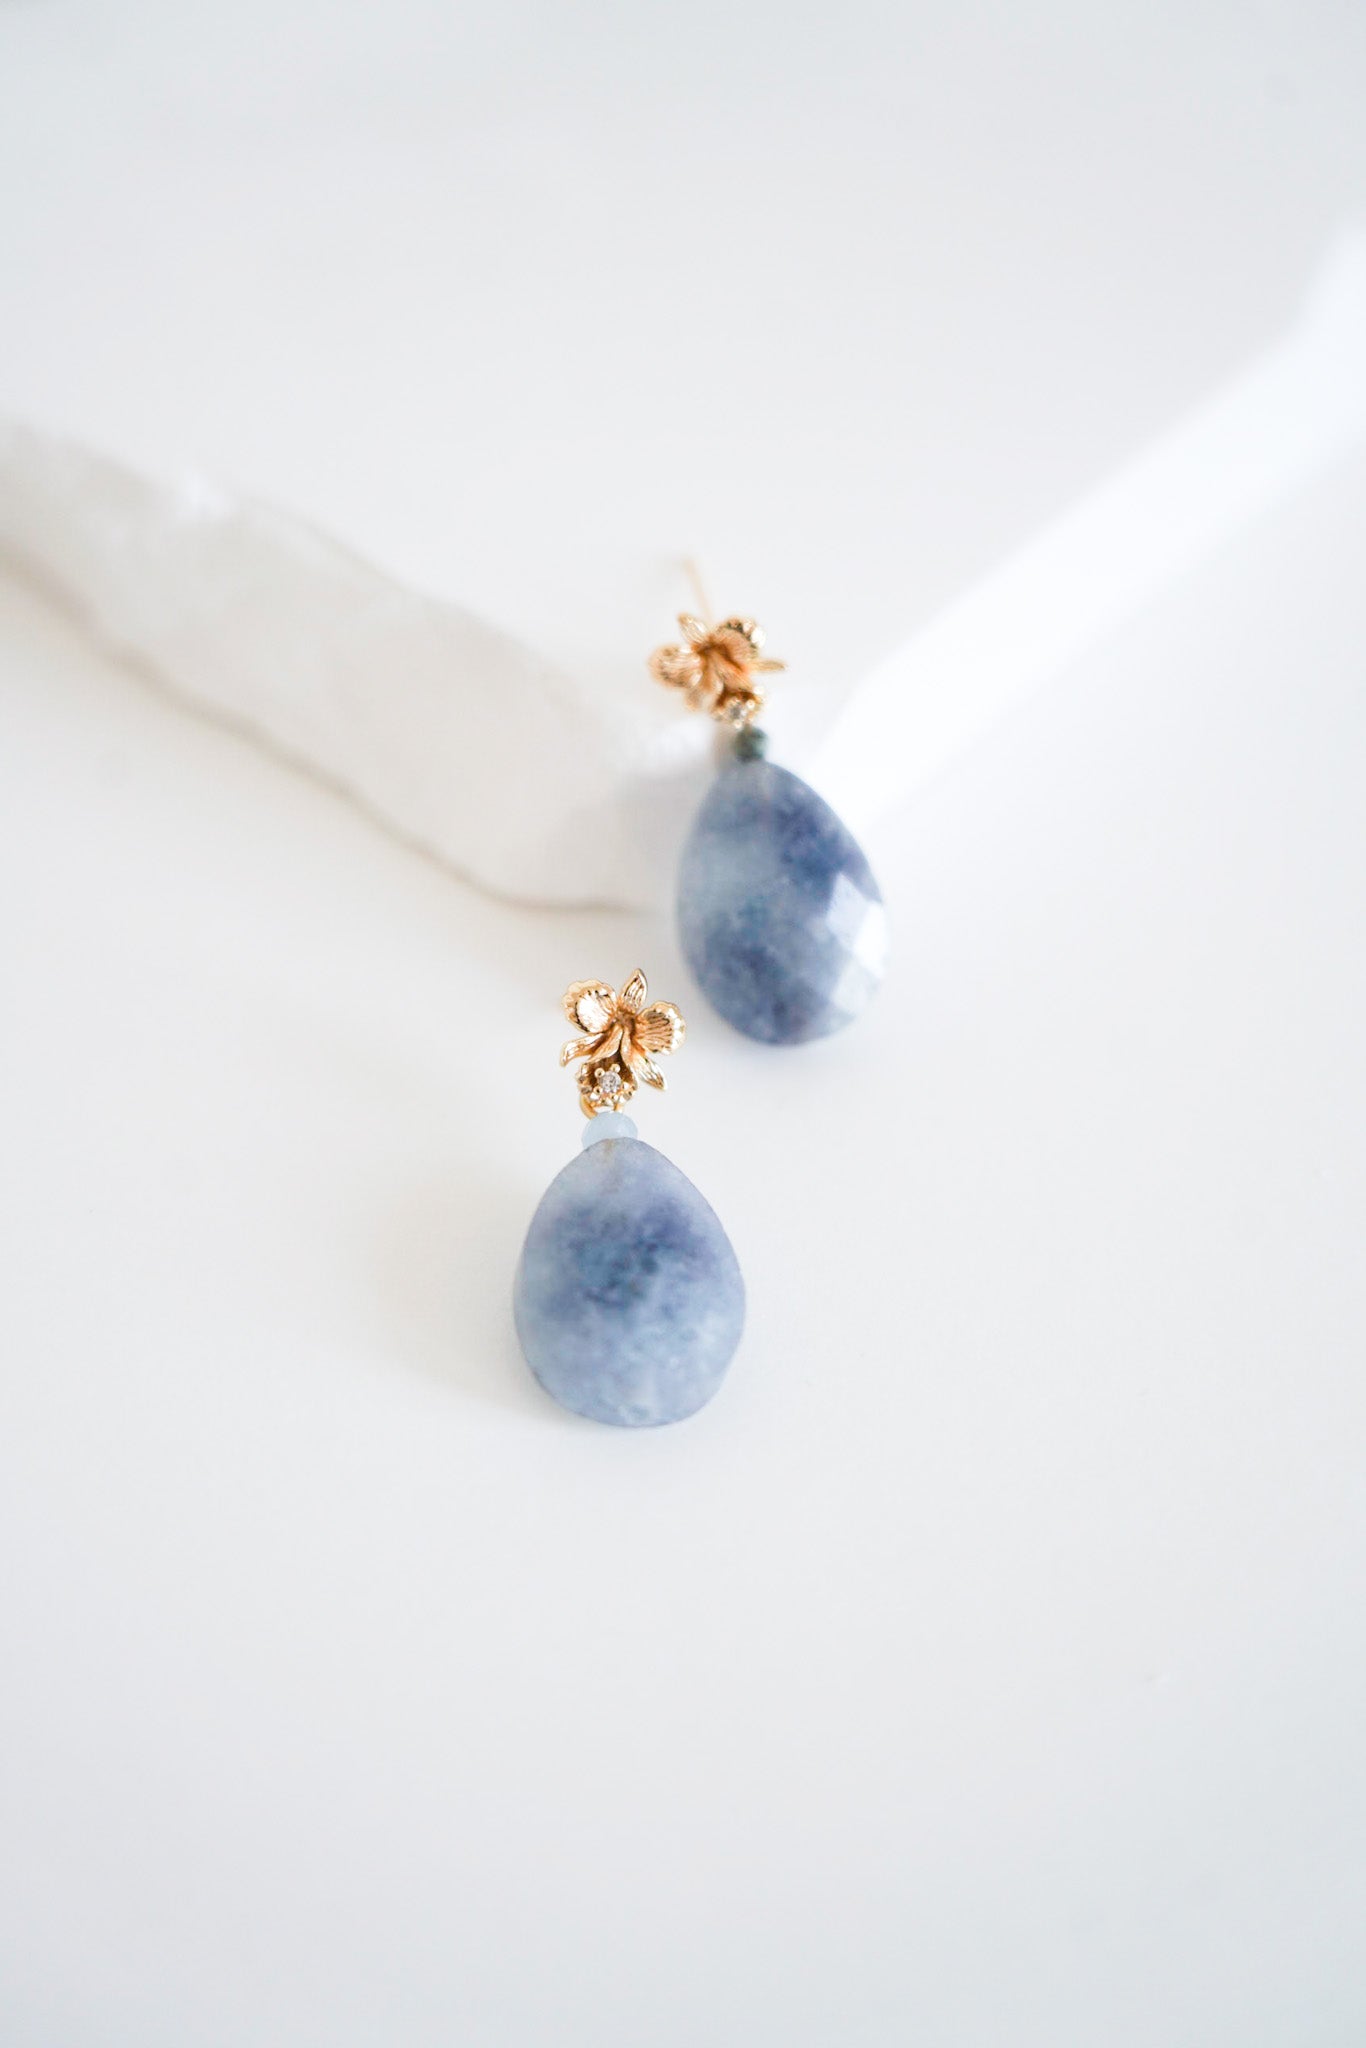 boucles d'oreilles avec une pierre bleu et une attache en or avec un cristal confectionné pour un mariage